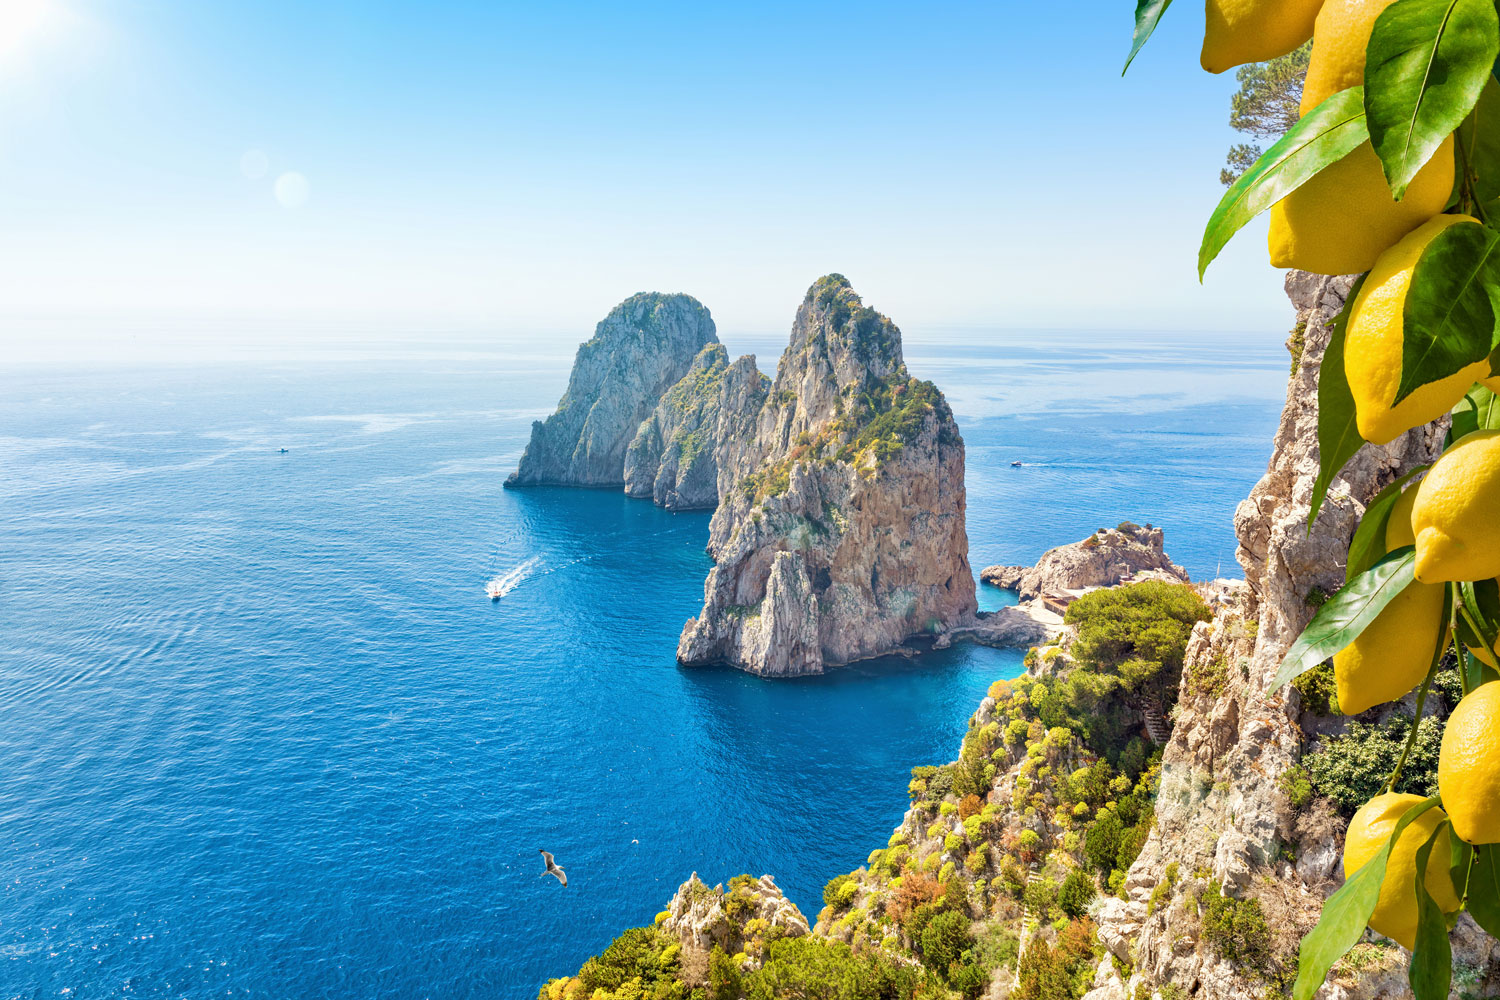 Versinkt bei Capri tatsächlich die Sonne im Meer? Losgehen und es selbst herausfinden! © Shutterstock